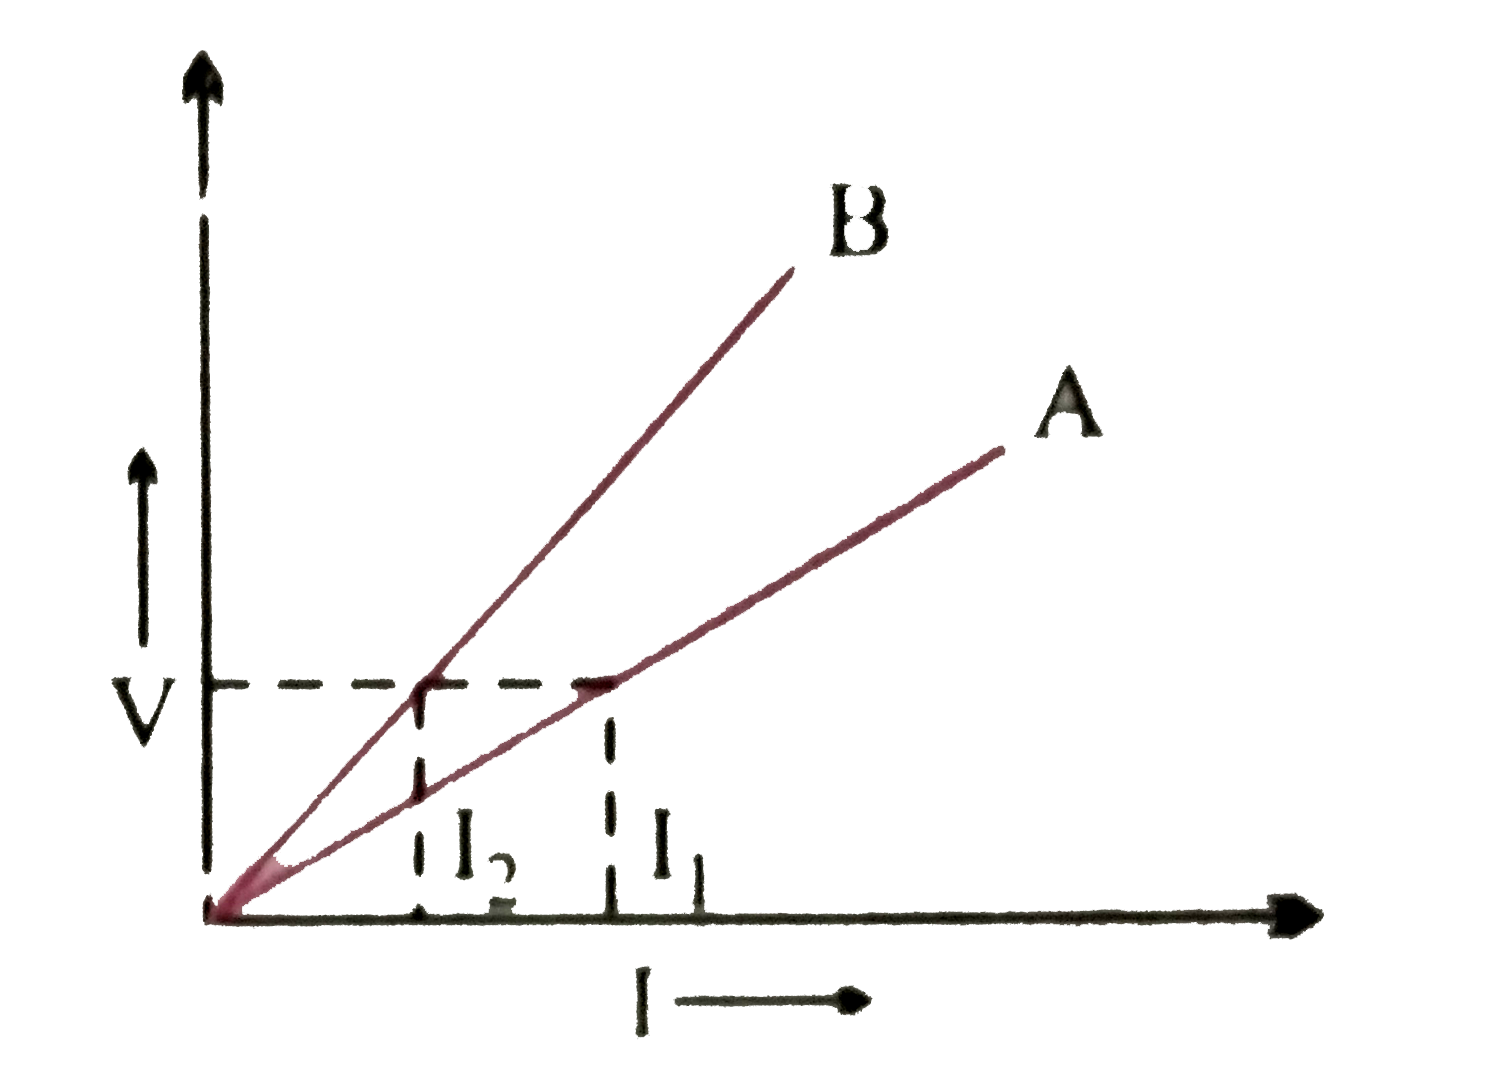 दो धात्विक प्रतिरोधकों  के समांतर  और श्रेणी क्रम संयोजनों के लिए  V-I ग्राफ  निम्न  चित्र में प्रदर्शित  किये गये है । कौन - सा  ग्राफ  समांतर  क्रम संयोजन  को व्यक्त करता है ?